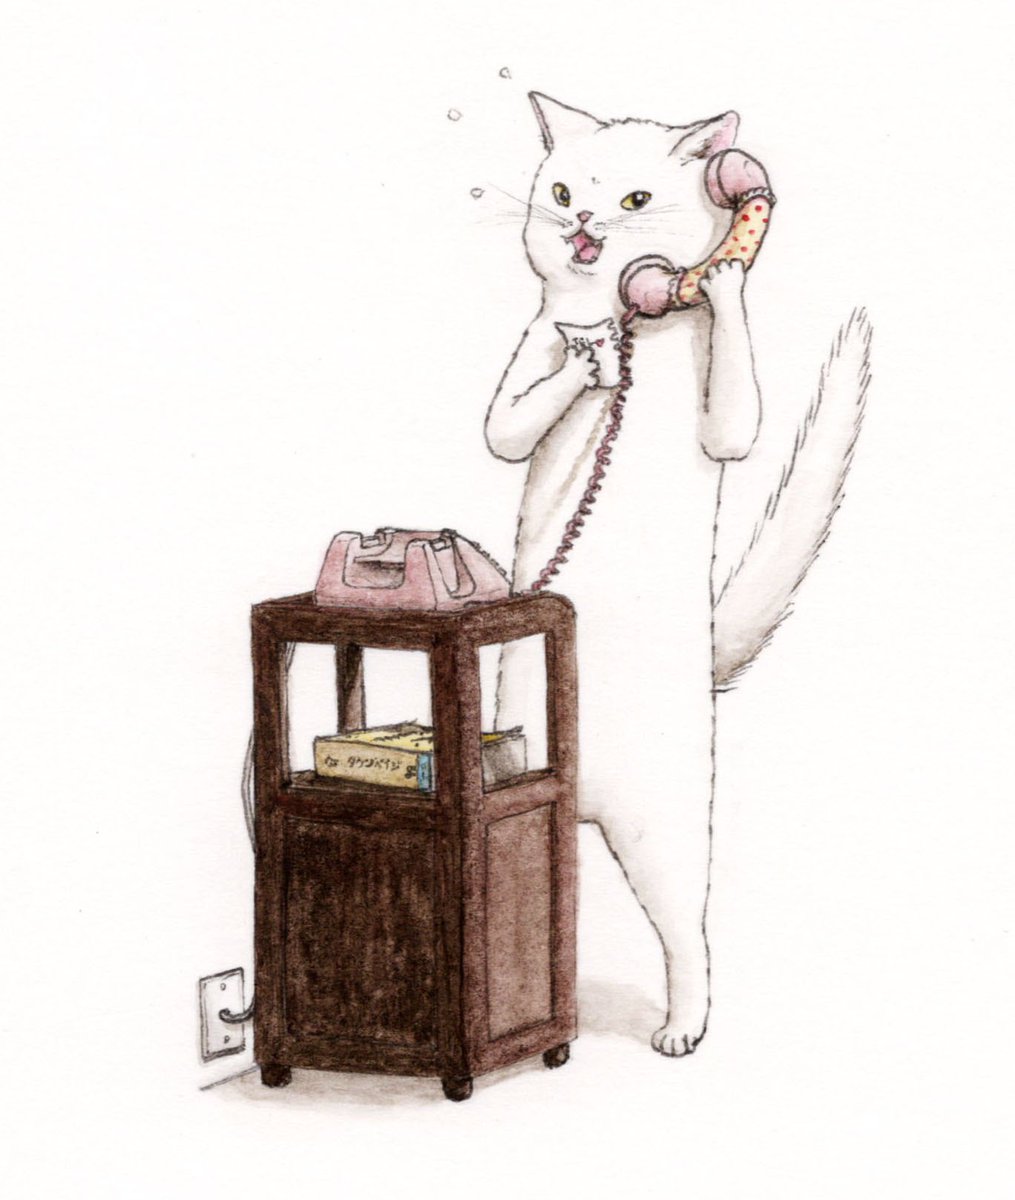 「『あの子に電話をしたら親御さんが出た猫』あ!も…もす!もしもし!?あ、あの、あの」|エルクポットの動物群像絵🐾のイラスト